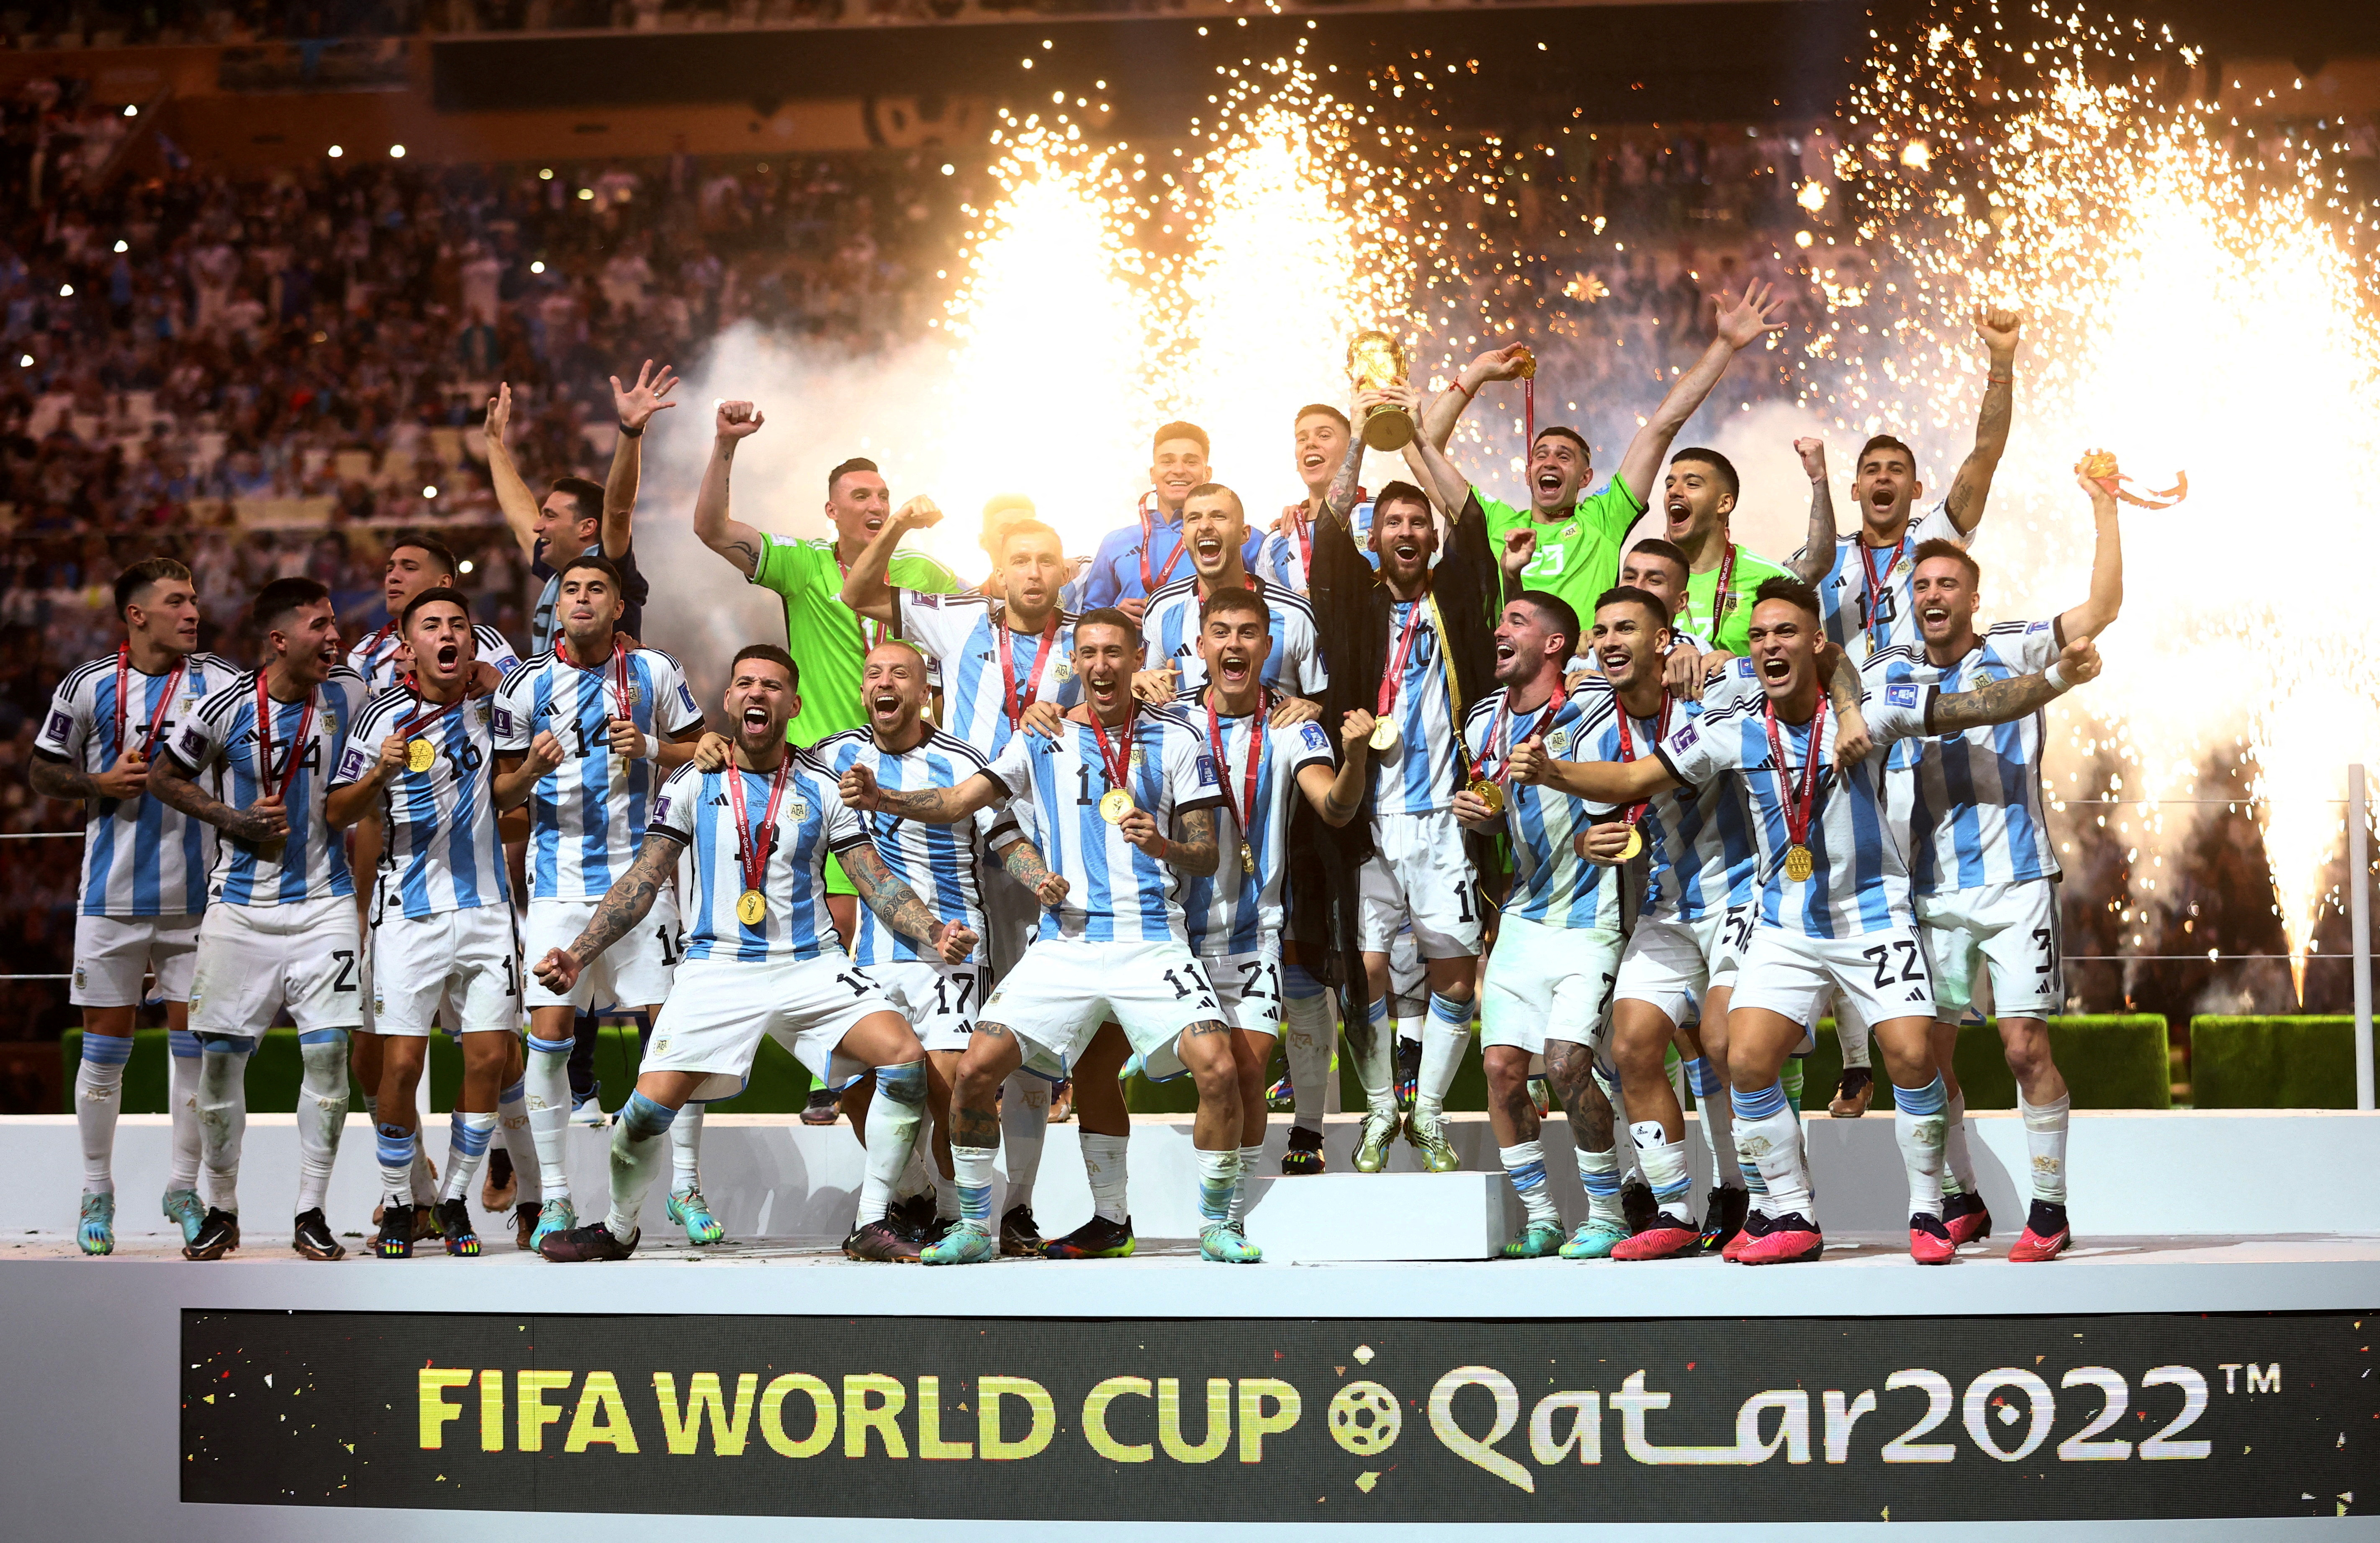 La selección argentina se consagró campeona luego de una emotiva final ante Francia (REUTERS/Carl Recine)